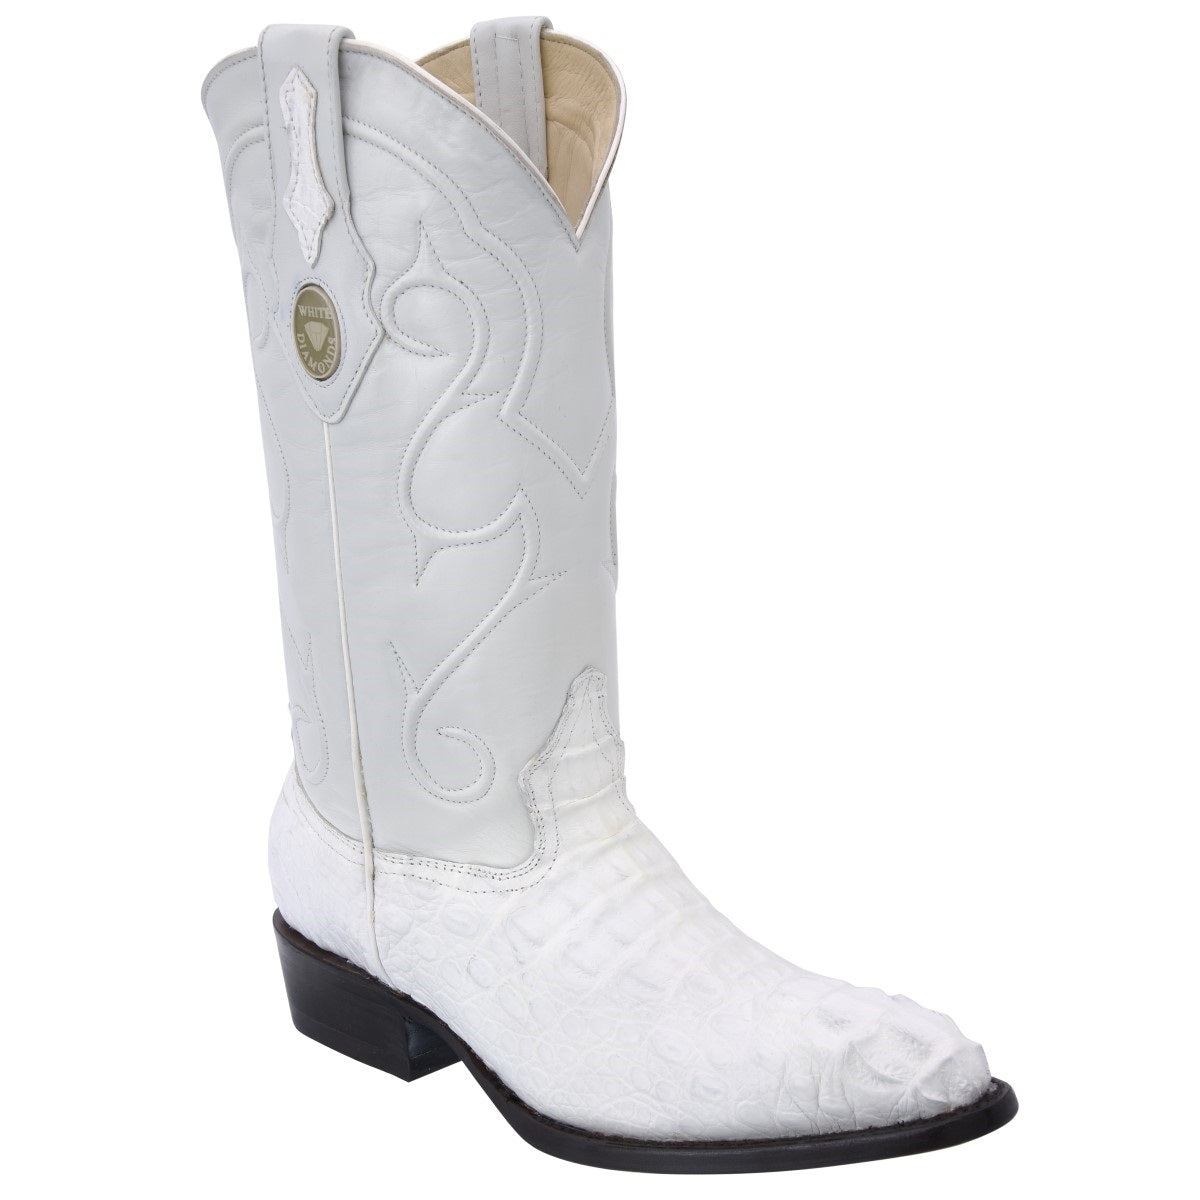 Botas Vaqueras TM-WD0261 - Western Boots